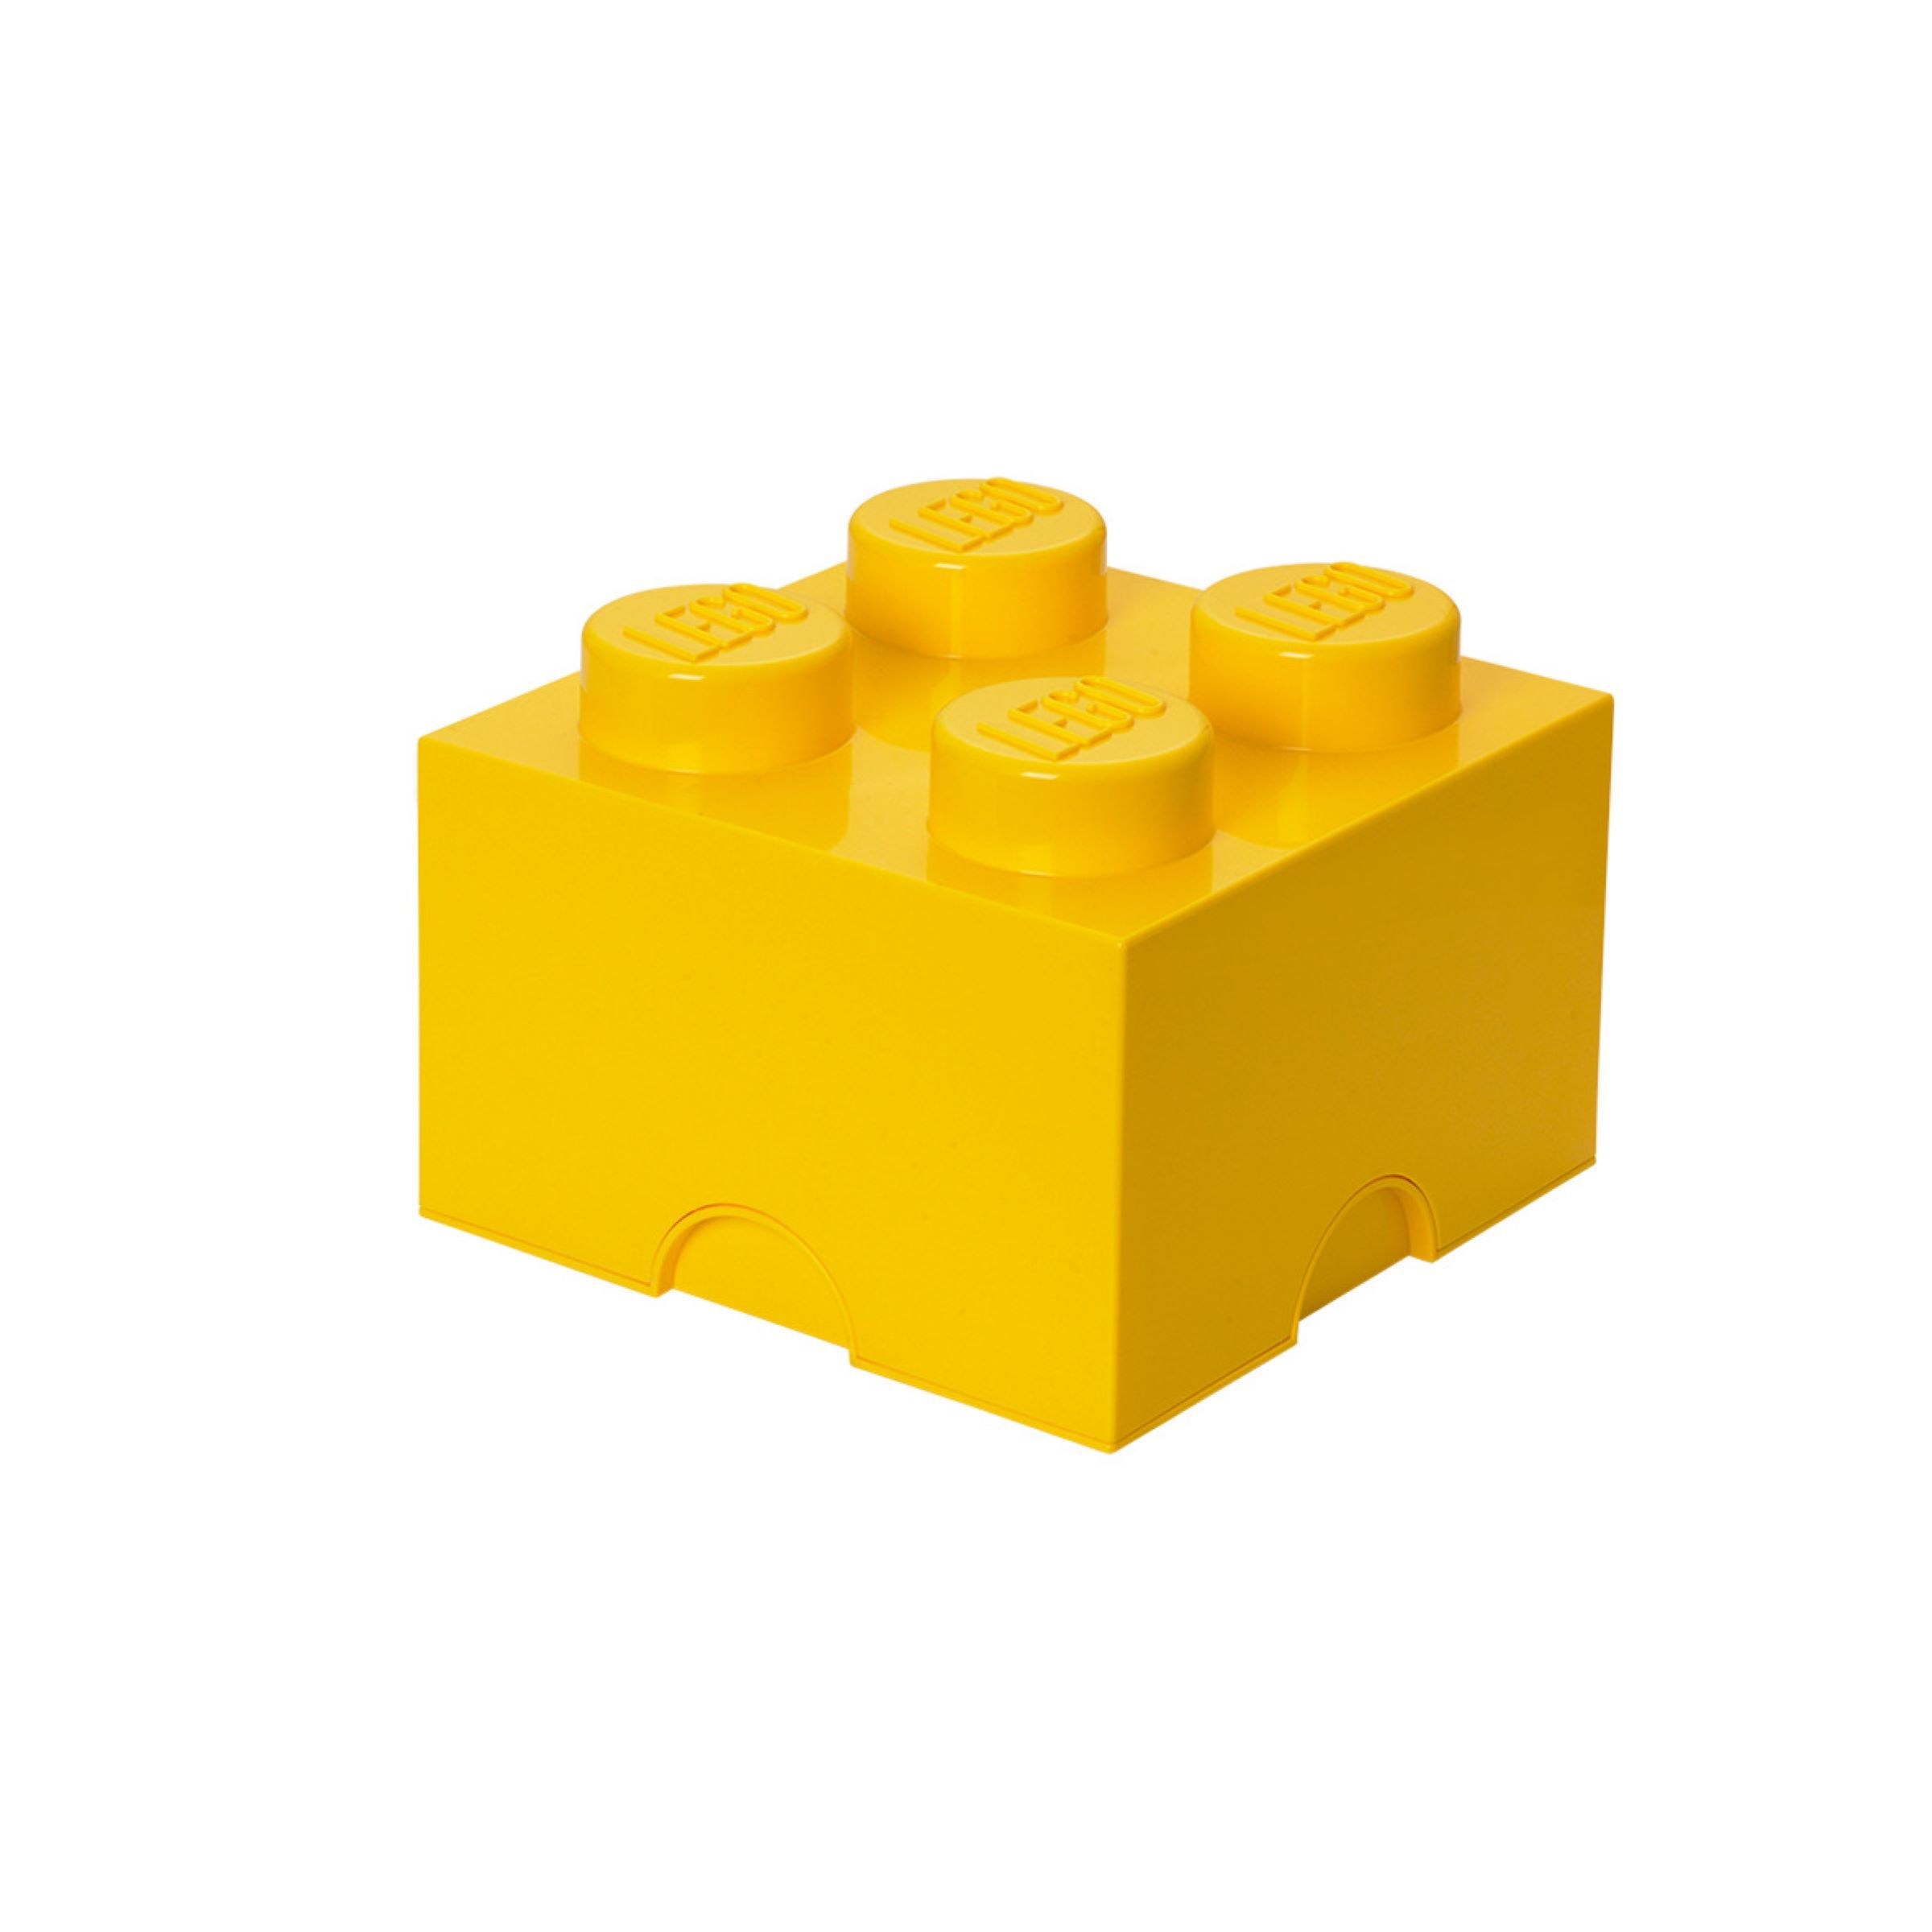 LEGO Gear 5007128 Aufbewahrungsstein mit 4 Noppen in Gelb